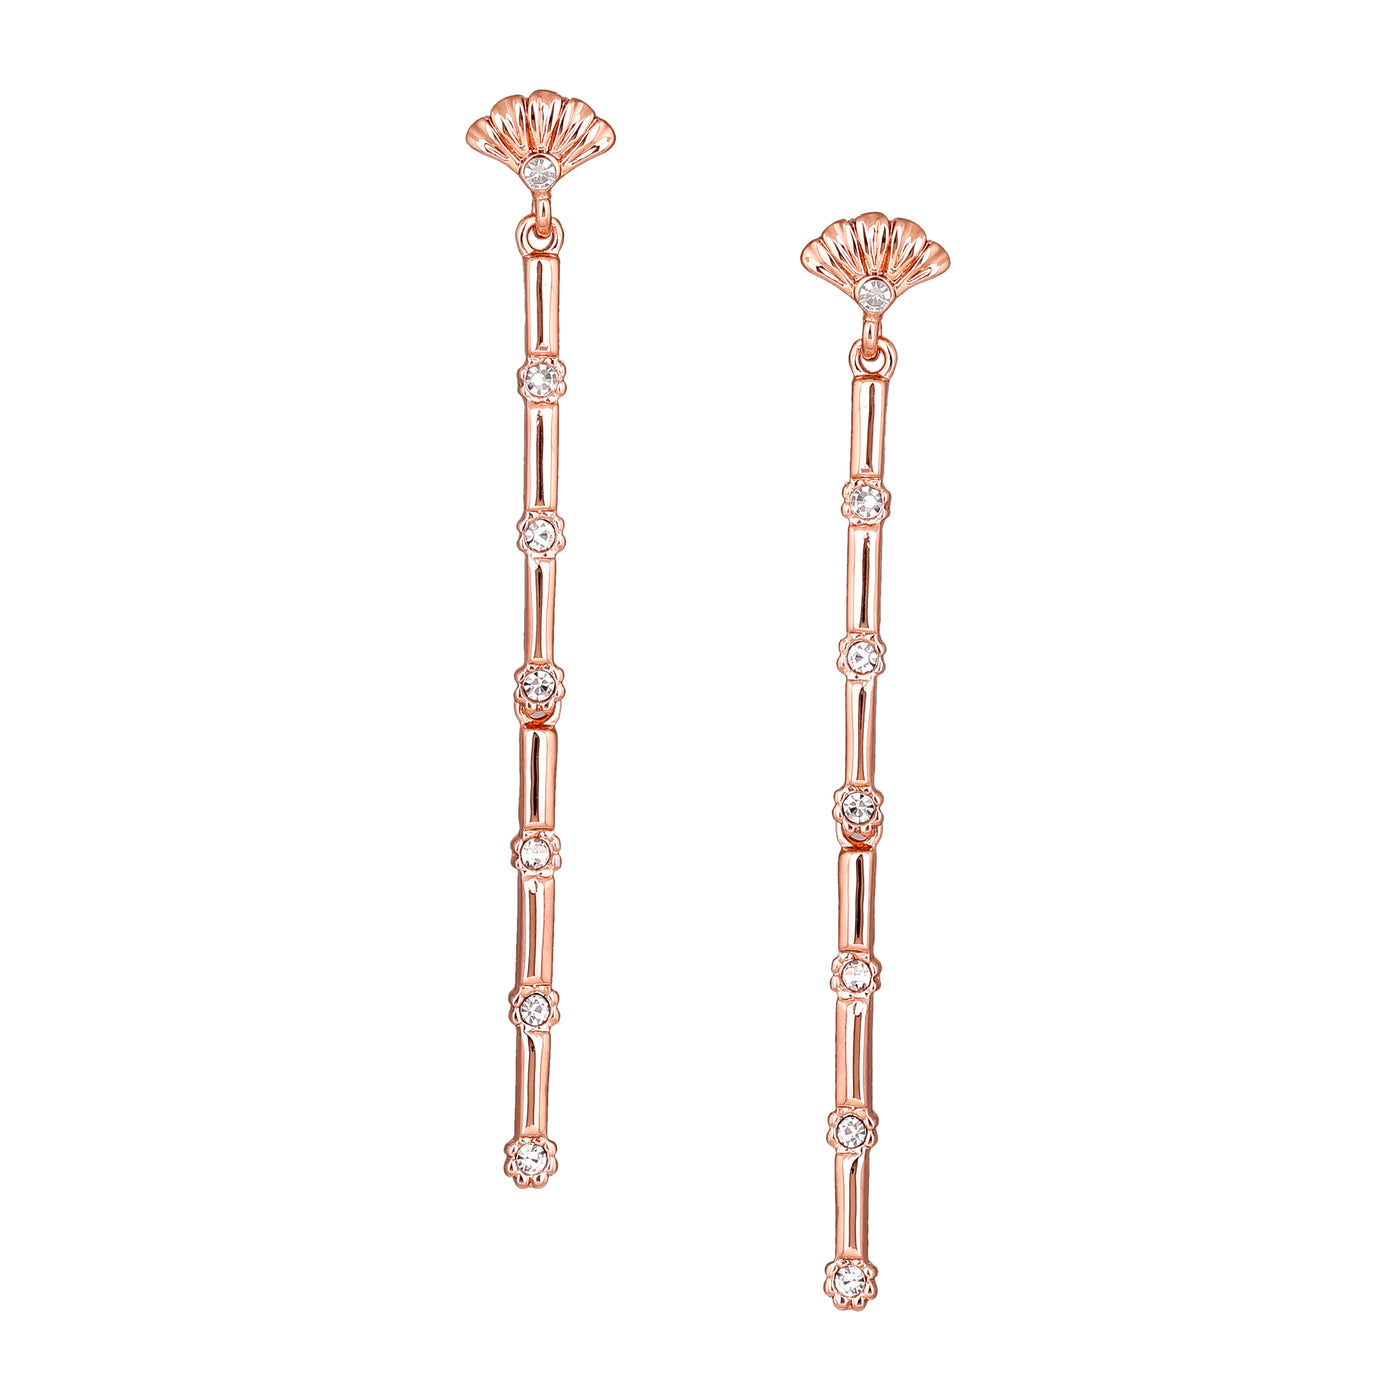 Estele Bling diamond gold plated studded sugarcane earrings for women